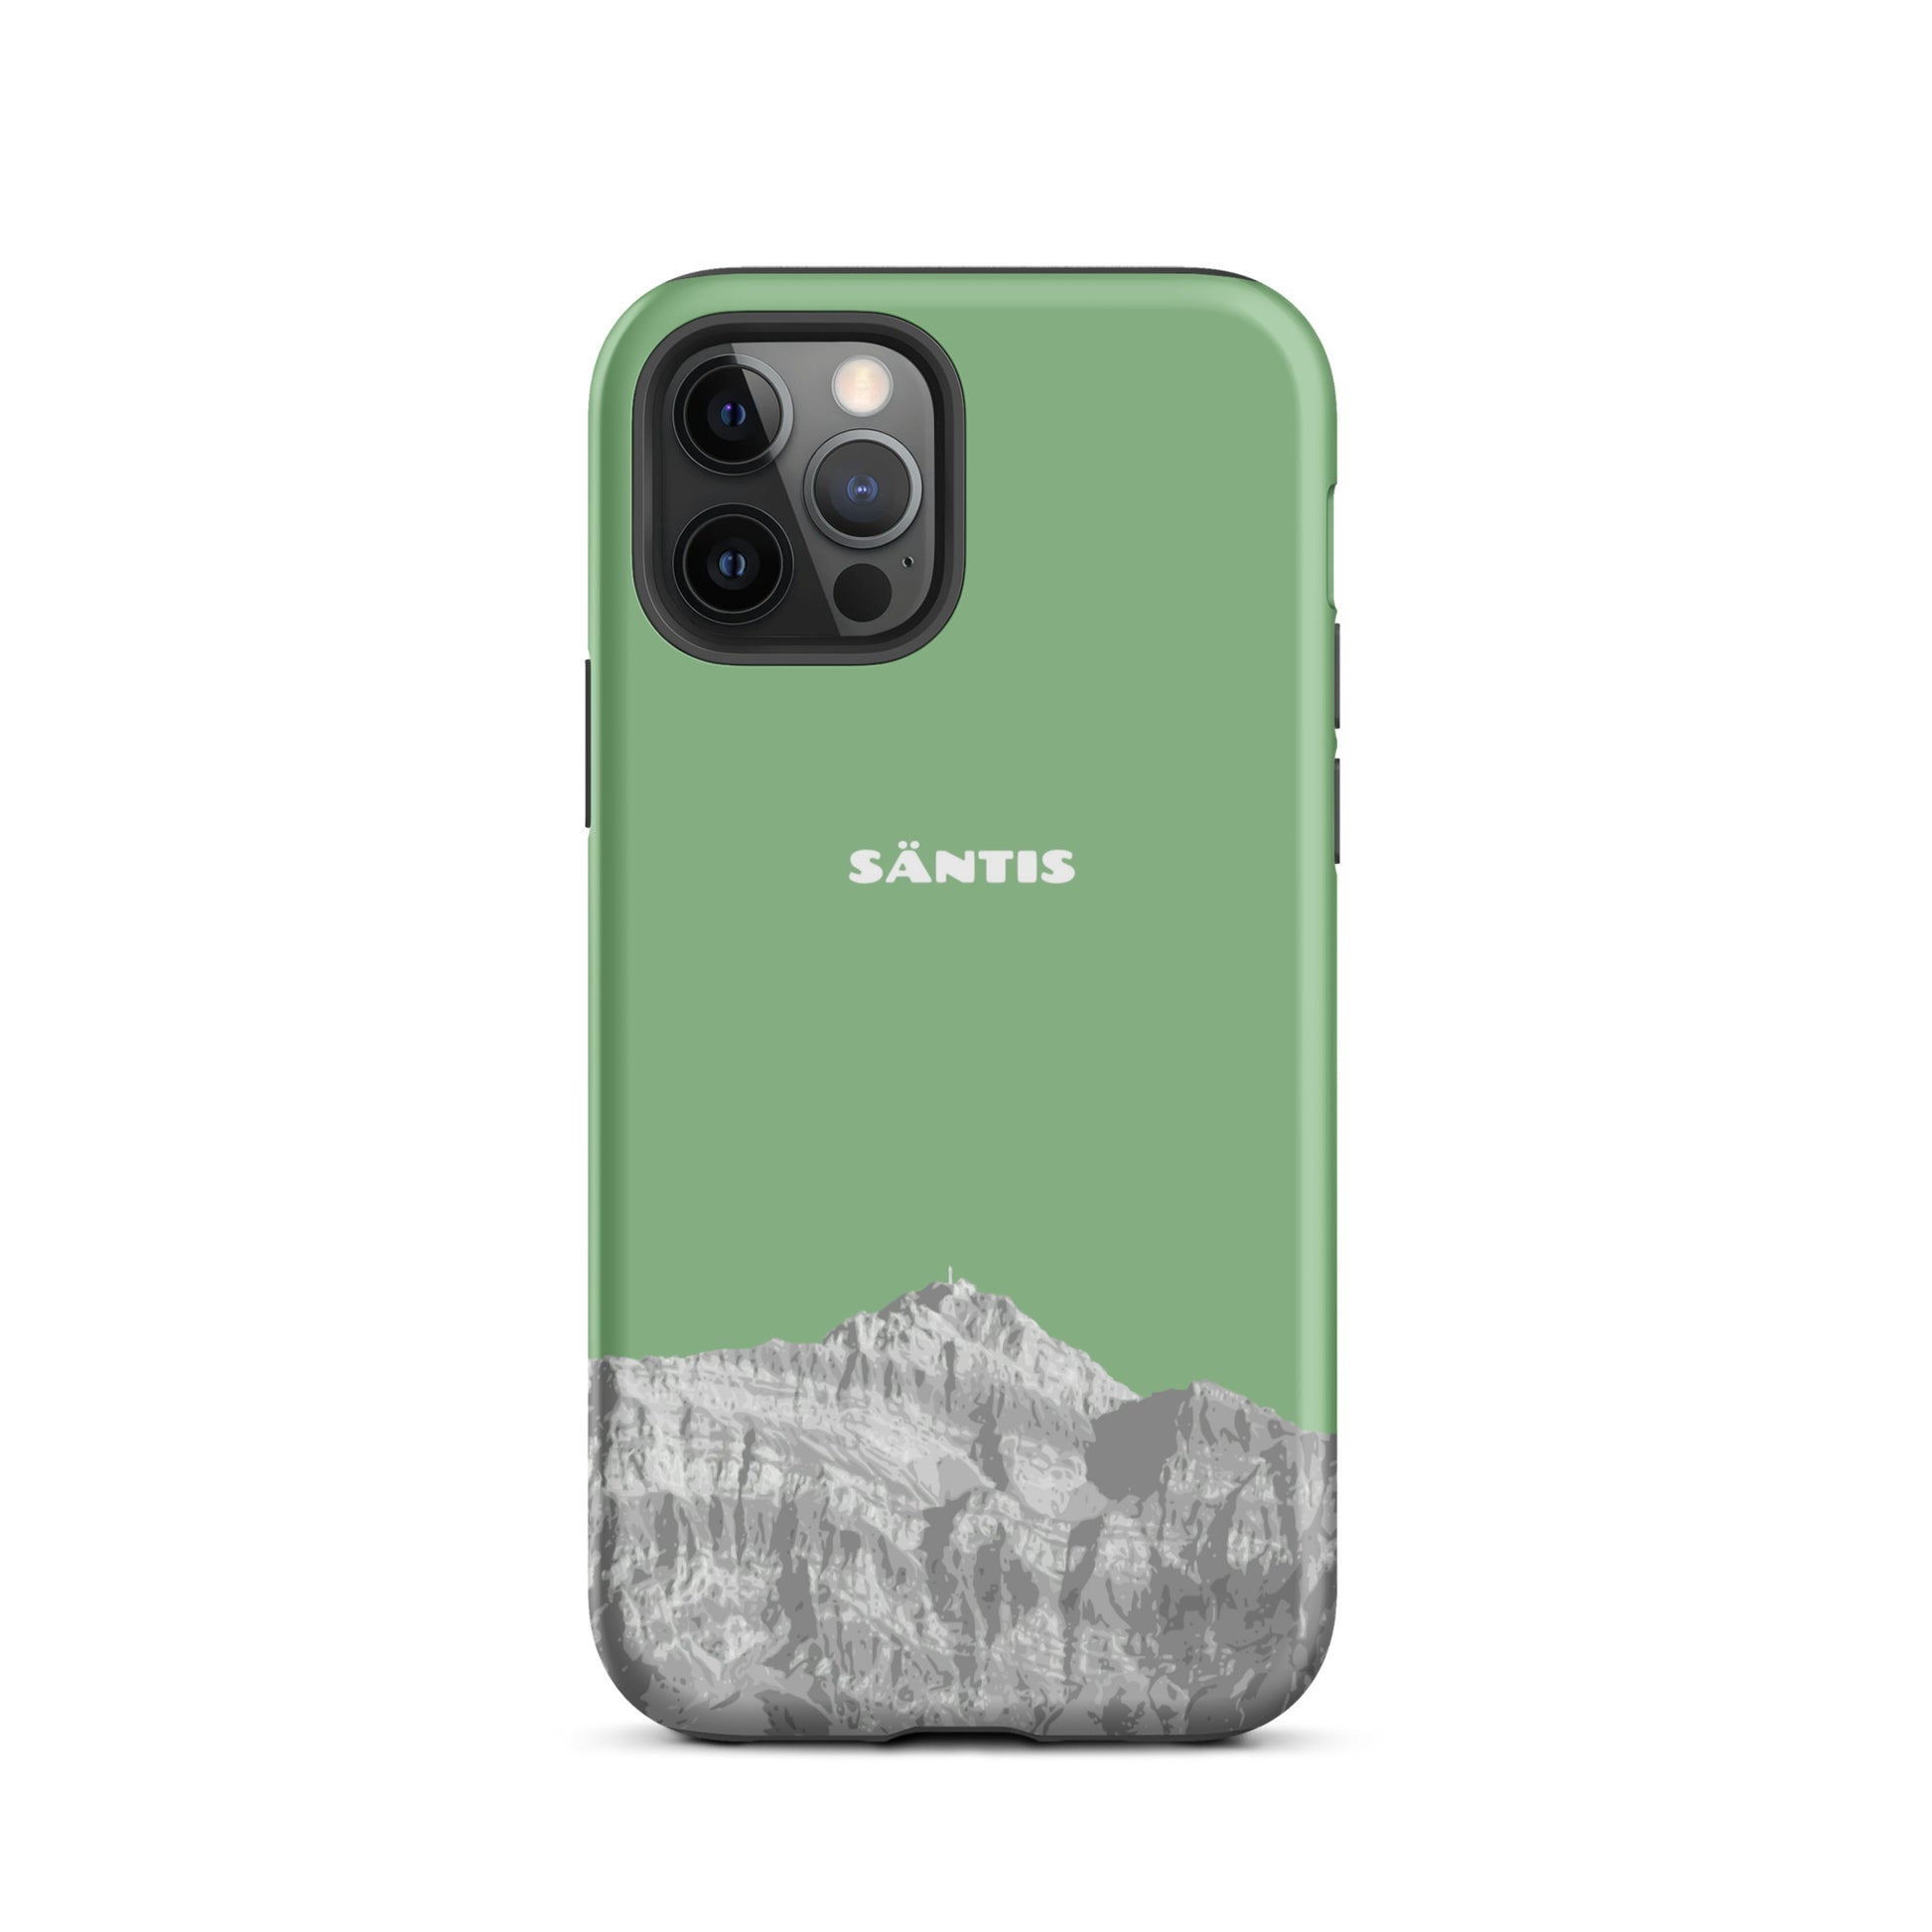 Hülle für das iPhone 12 Pro von Apple in der Farbe Hellgrün, dass den Säntis im Alpstein zeigt.